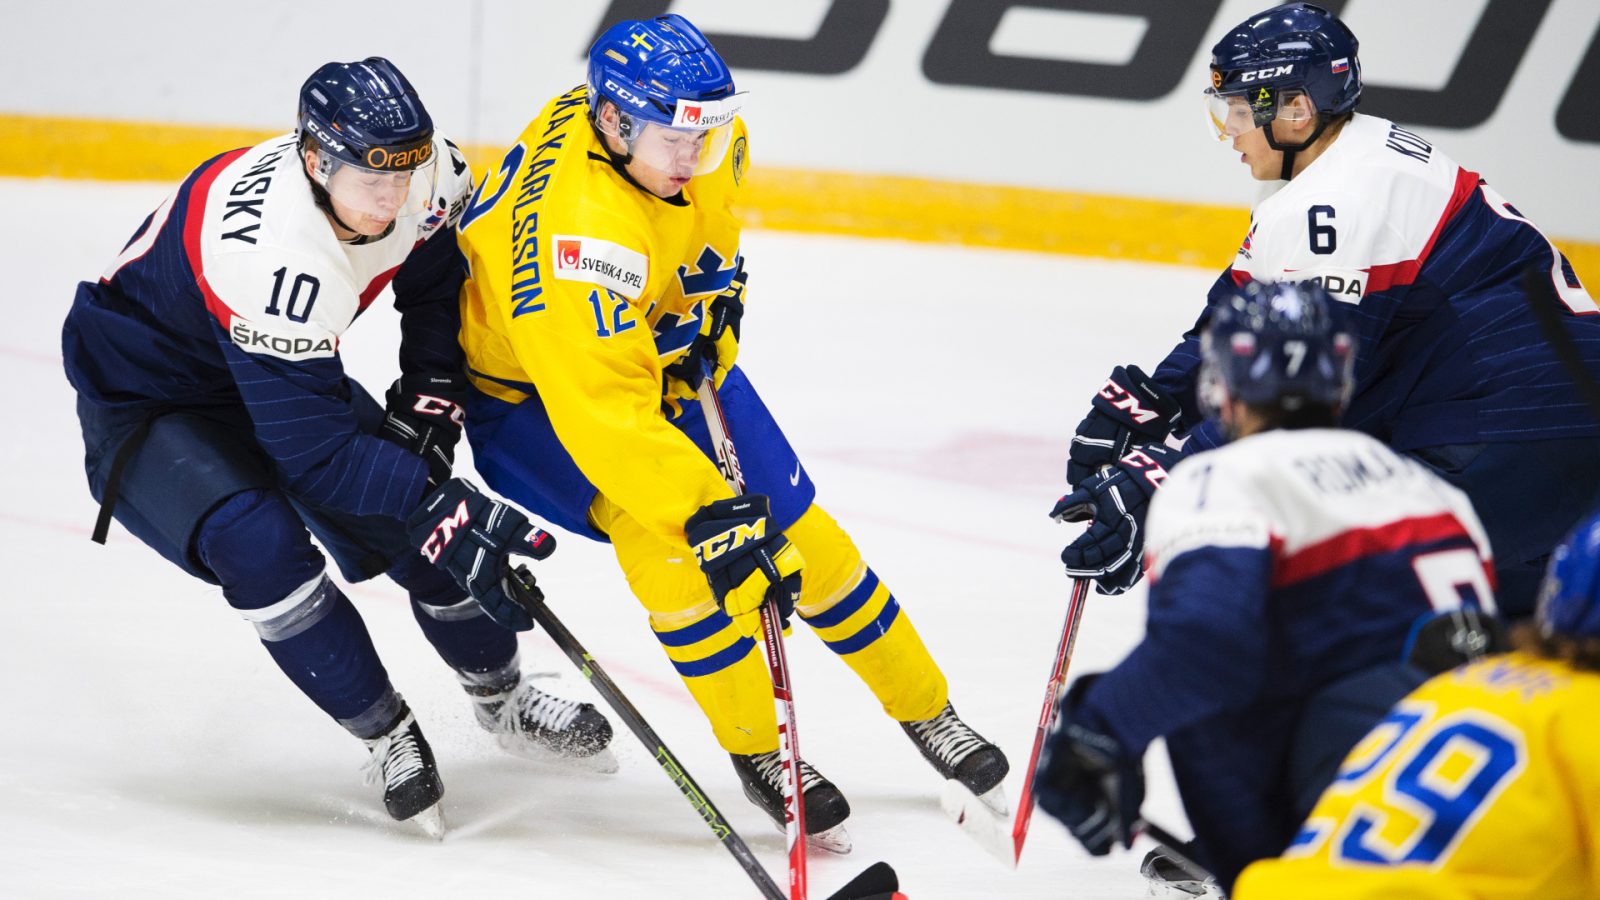 VLH-SILLY: Svensken byter AHL mot SHL